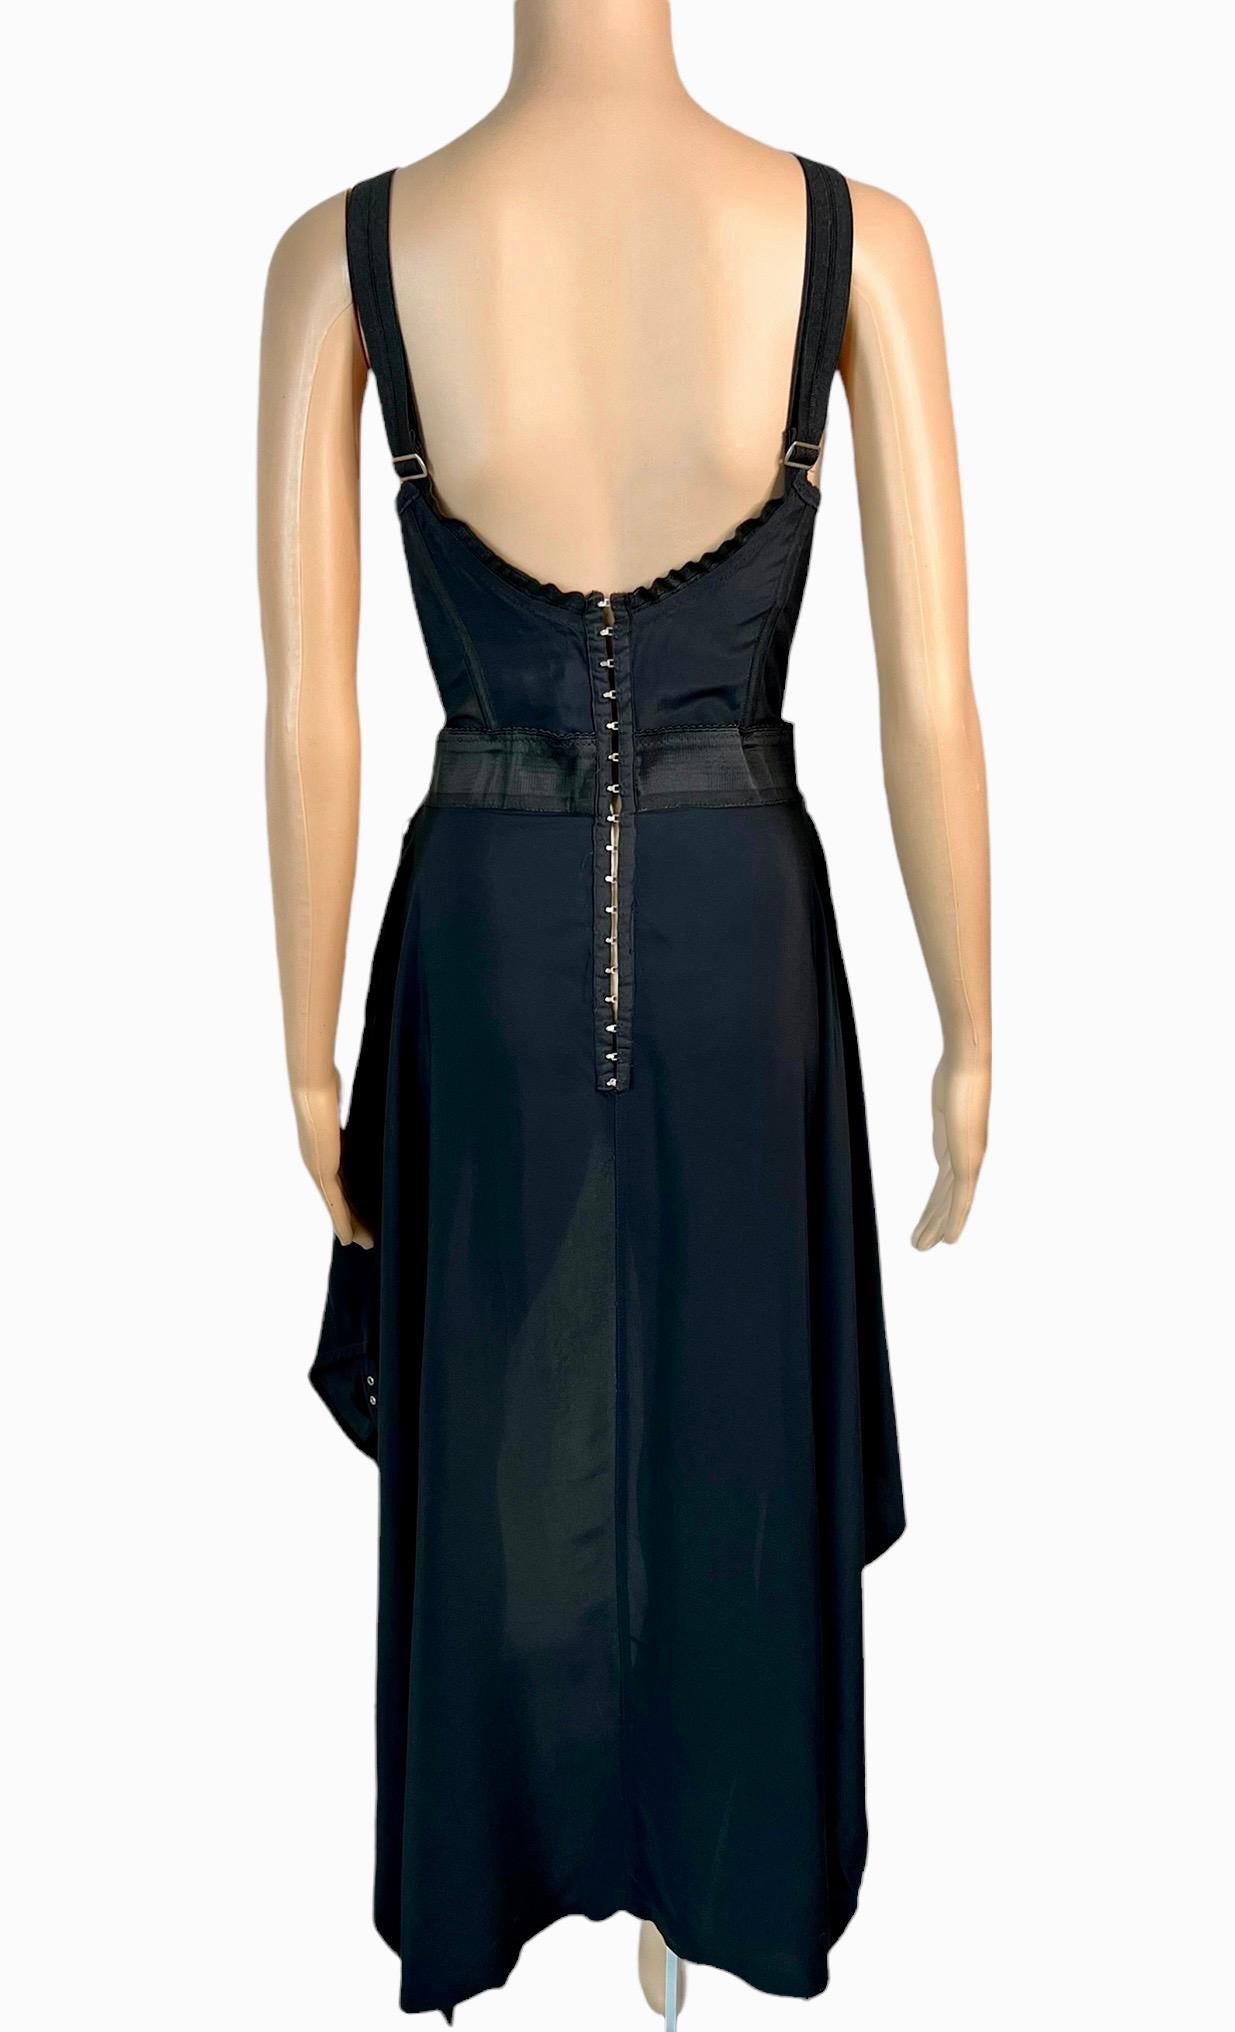 Jean Paul Gaultier S/S 1992 Runway Bra Corset Sheer Panels Black Evening Dress For Sale 4